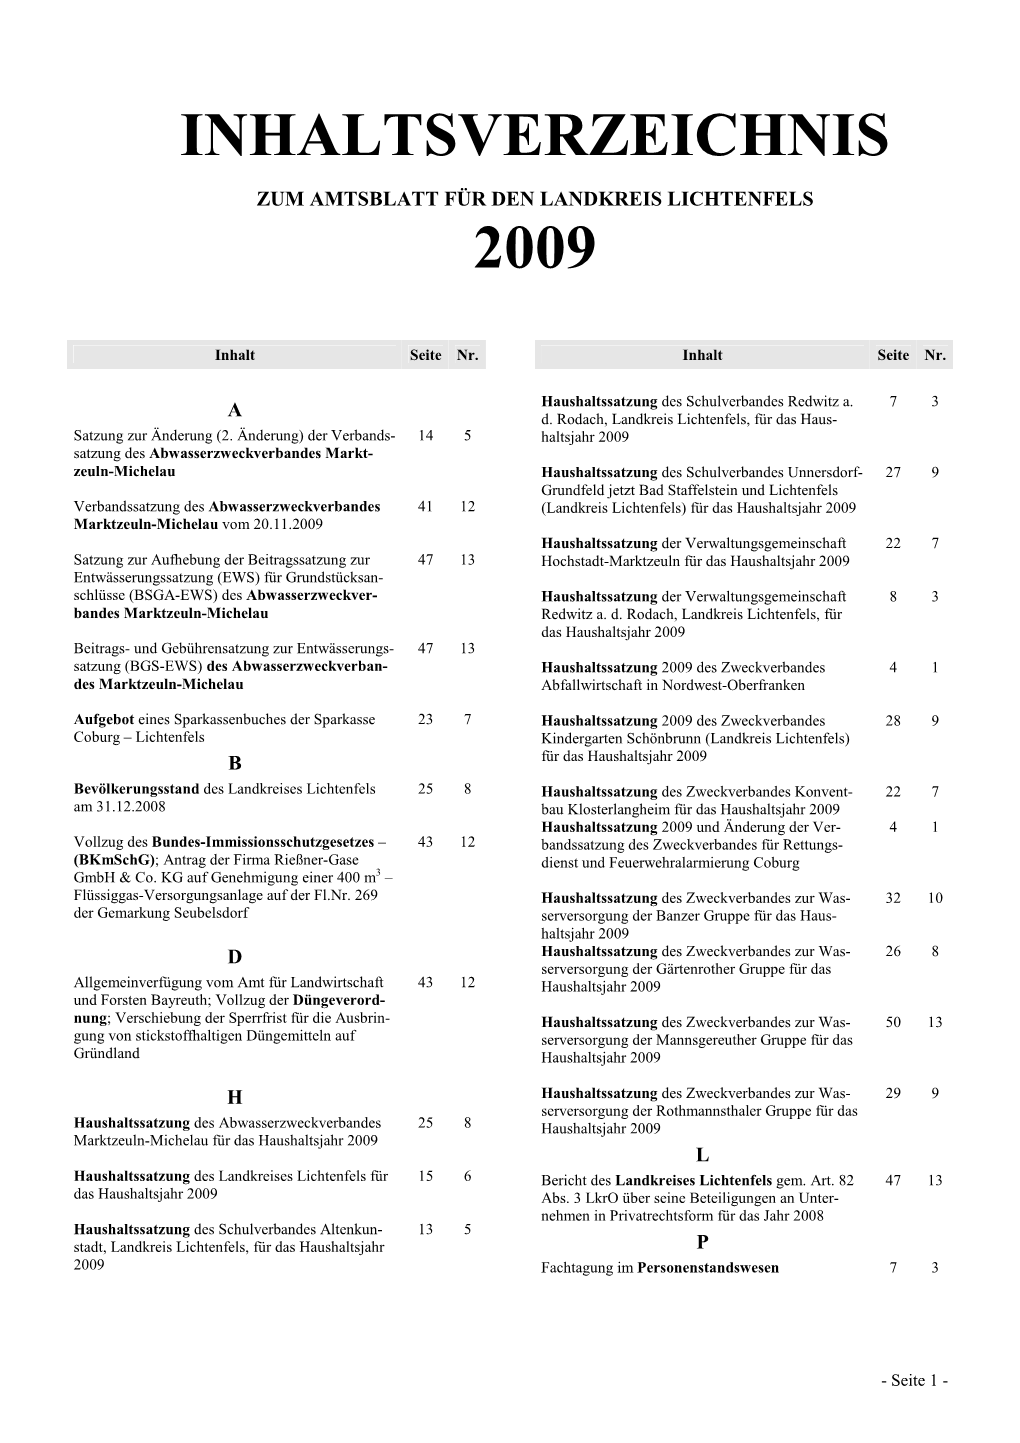 Inhaltsverzeichnis 2009